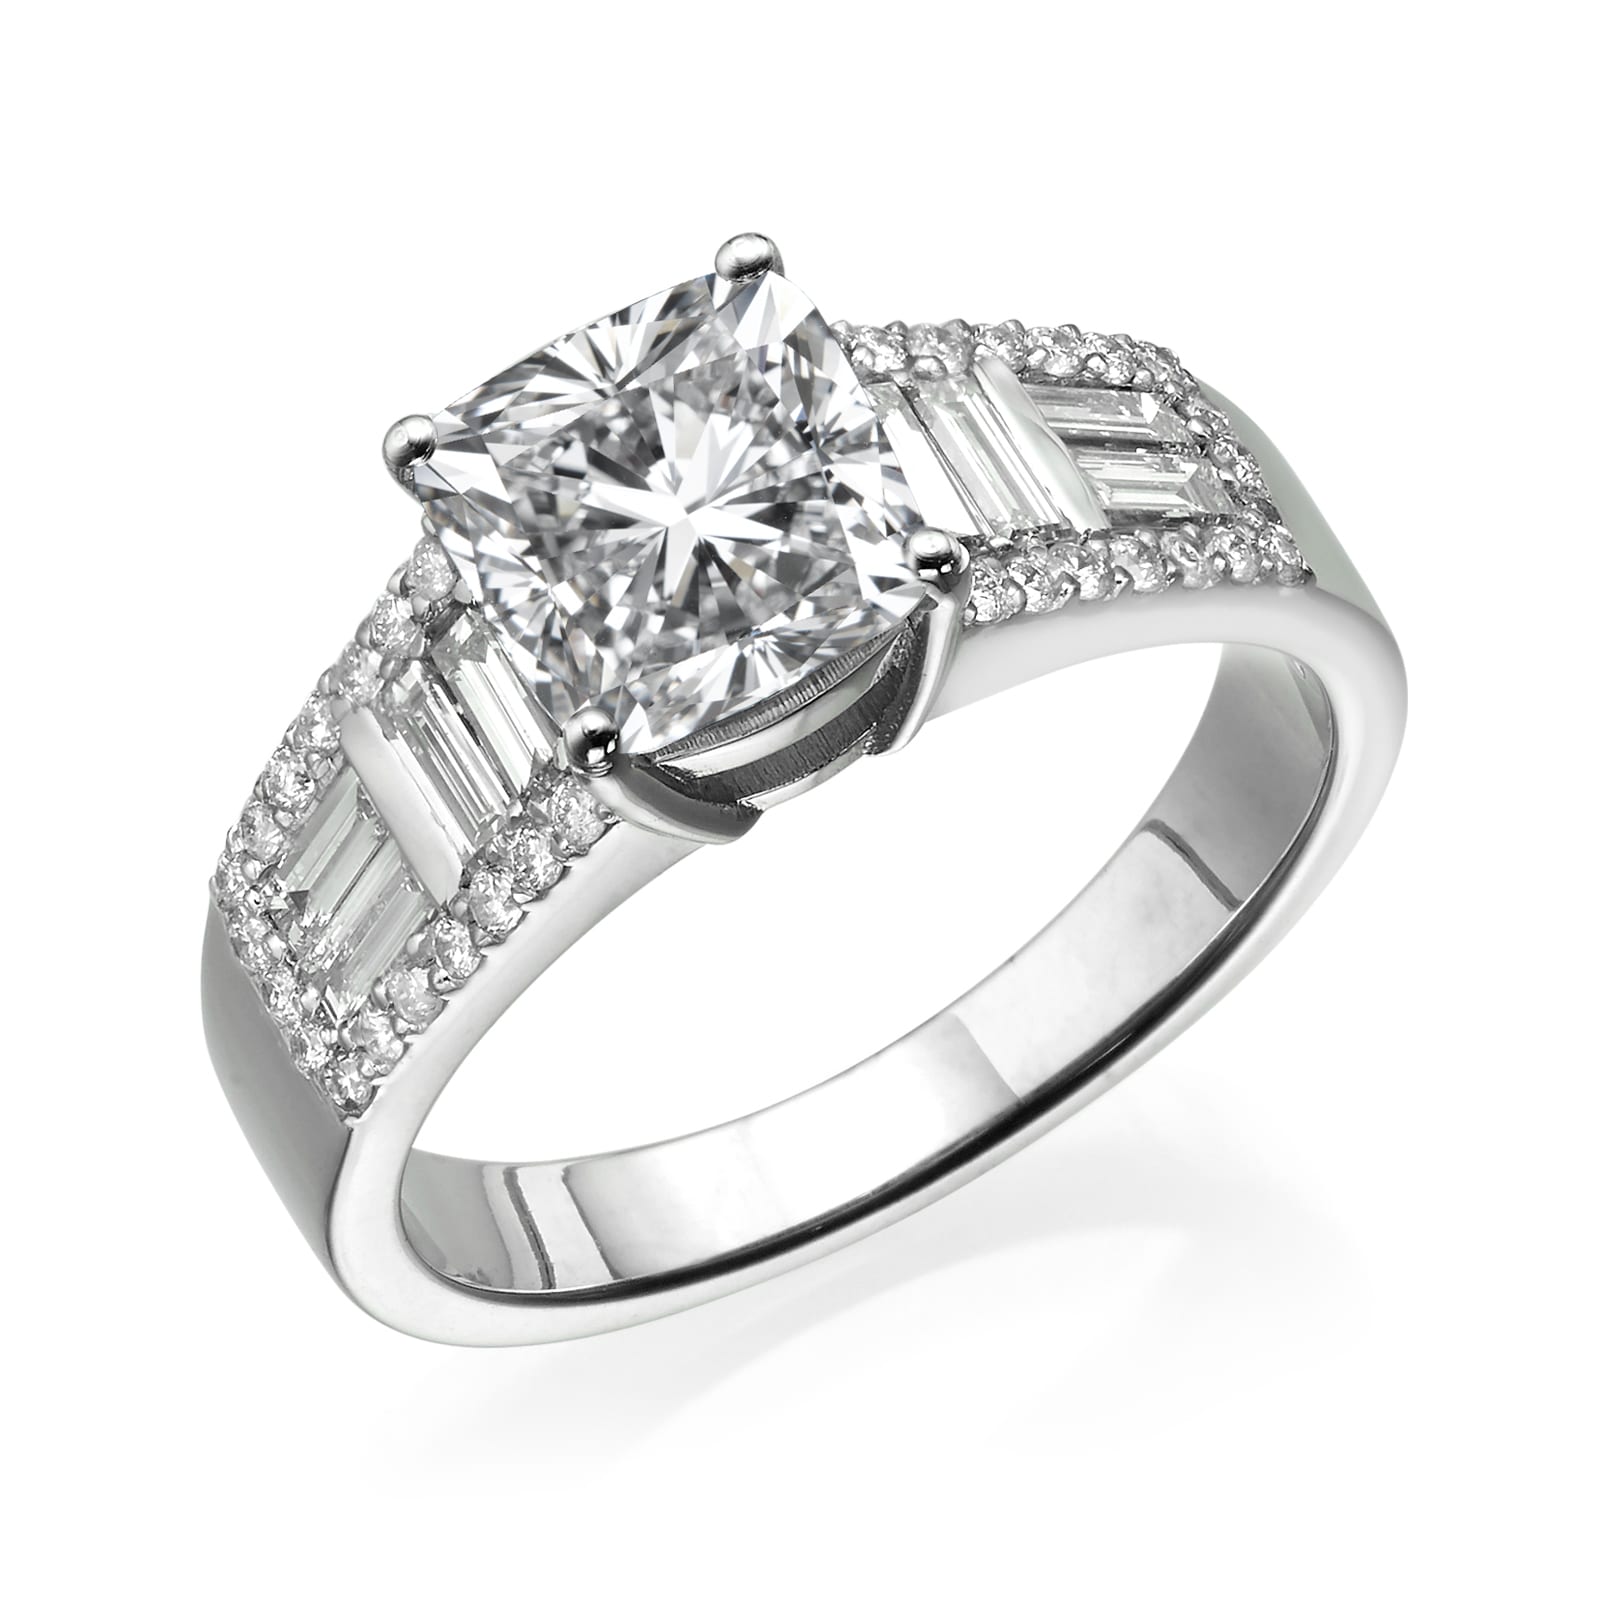 טבעת אירוסין אלגנטית של טבעת יהלומים מדגם סיינה עם יהלום מרכזי בולט כשלצדו יהלומי באגט ומצופה יהלומים עגולים קטנים יותר לאורך הרצועה.